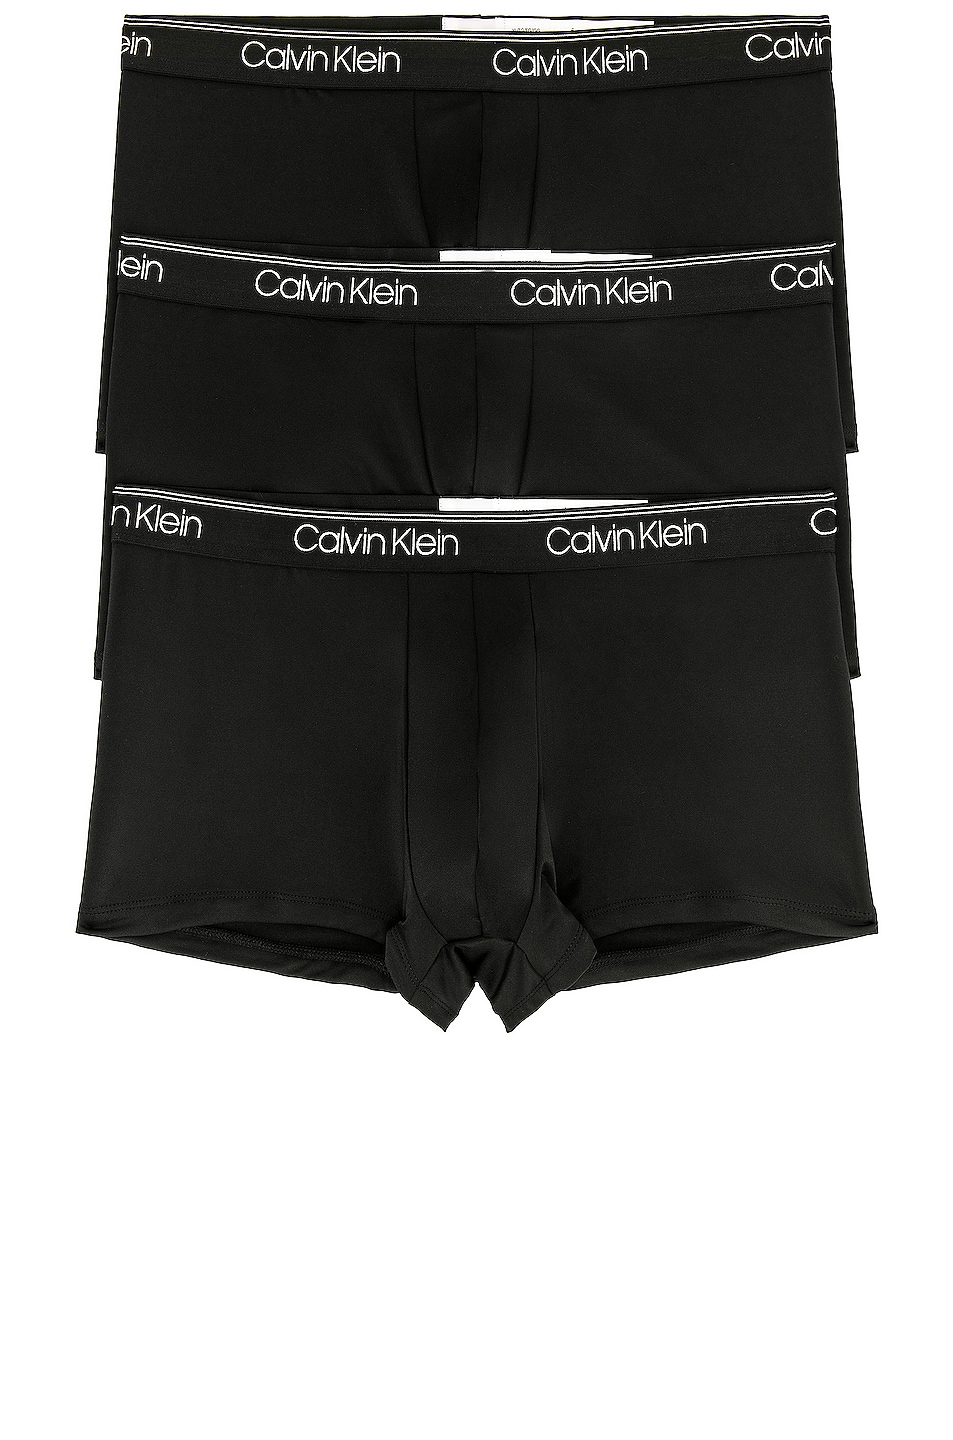 Image 1 of Calvin Klein Underwear Calvin Klein Low Rise Trunk 3 Piece Set in Black